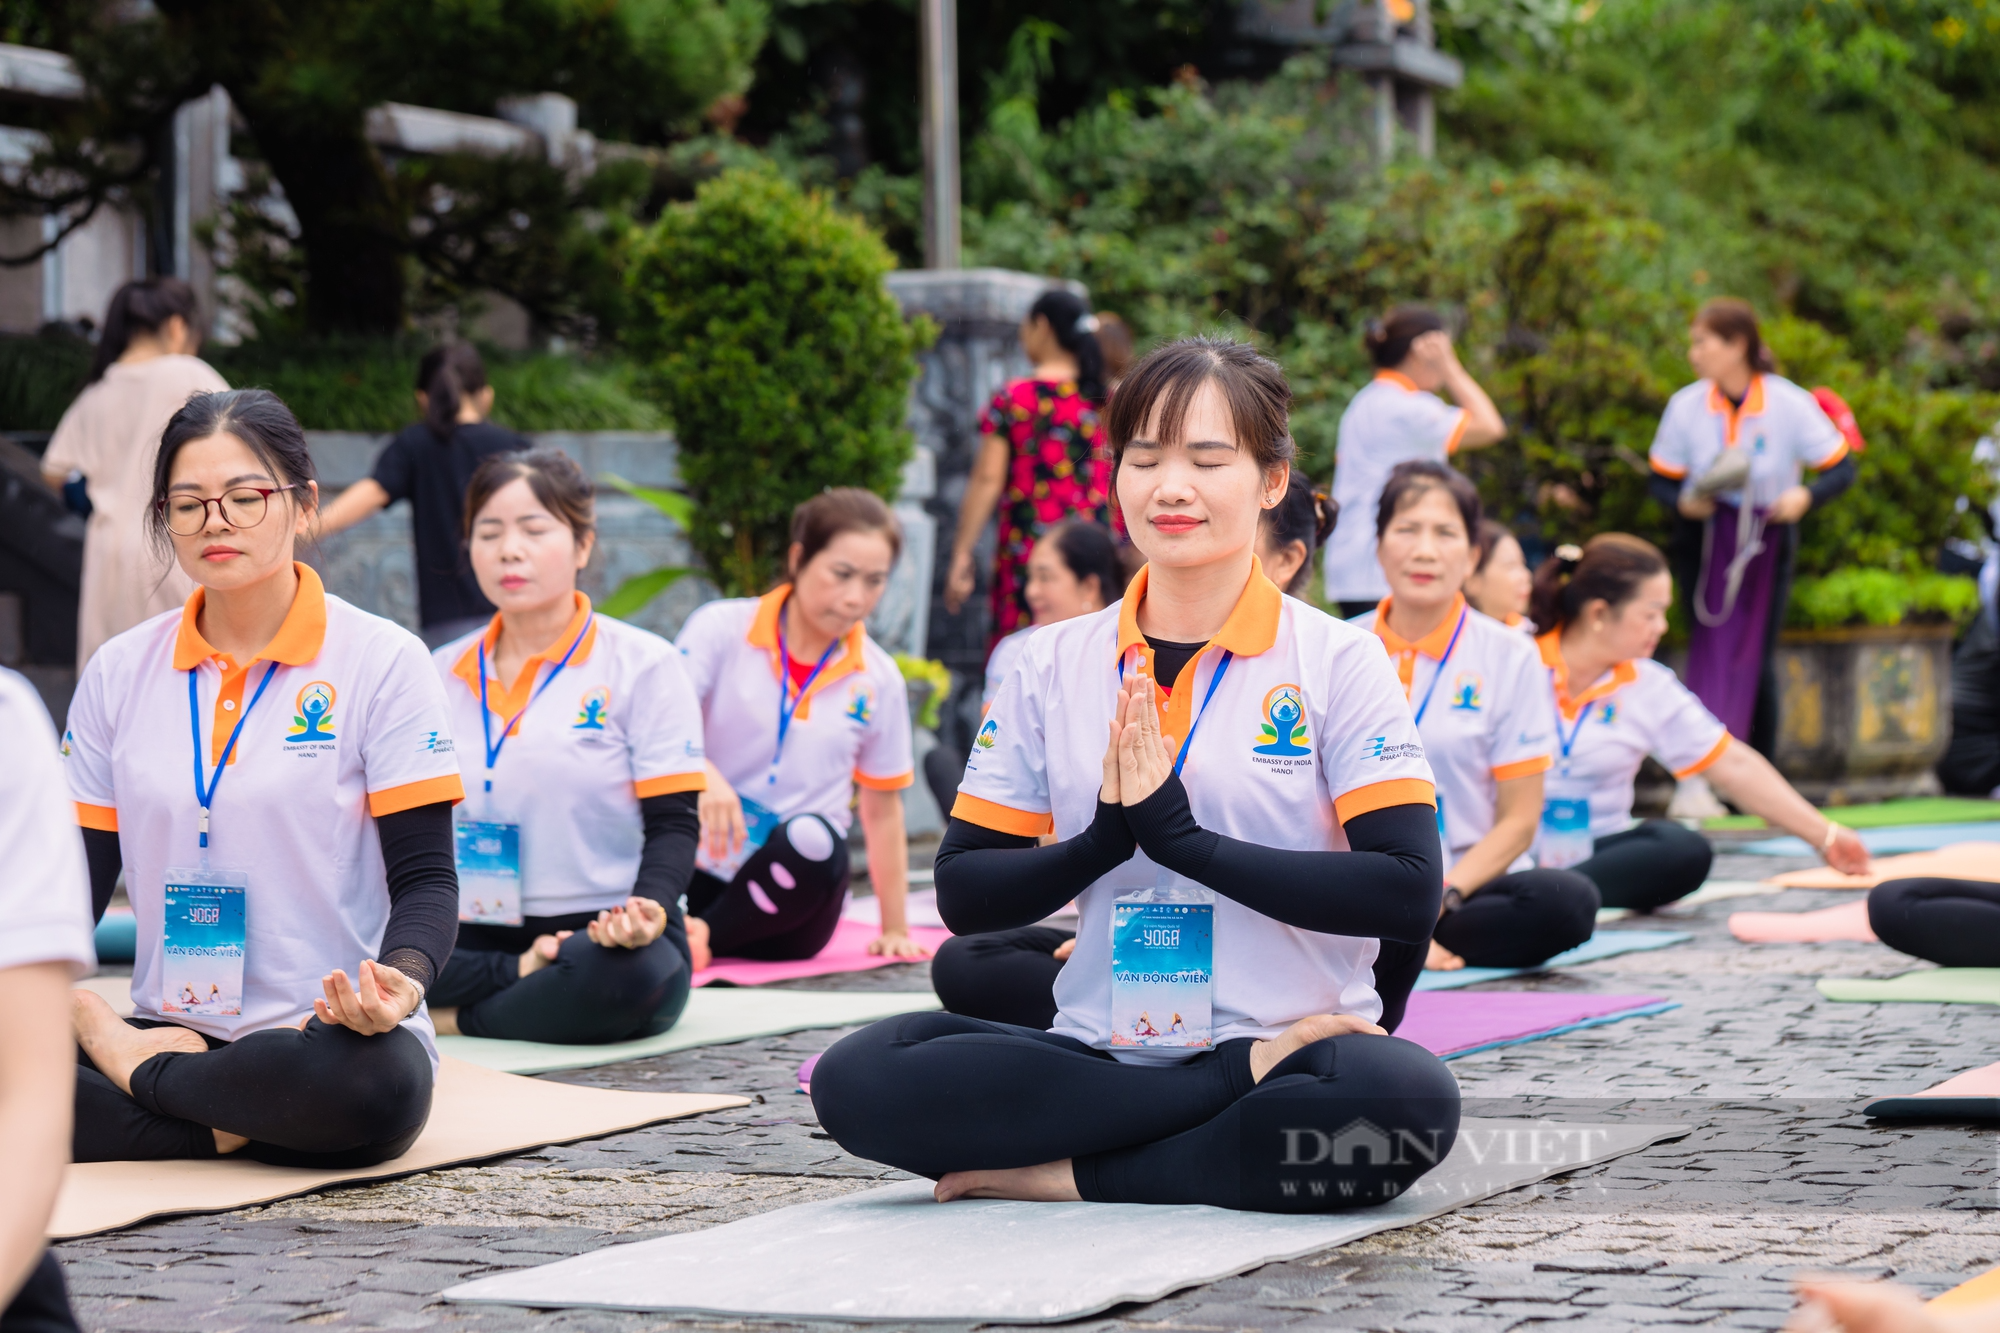 Yoga môn thể thao trị liệu sức khỏe cho du khách khi đến Sa Pa - Ảnh 3.